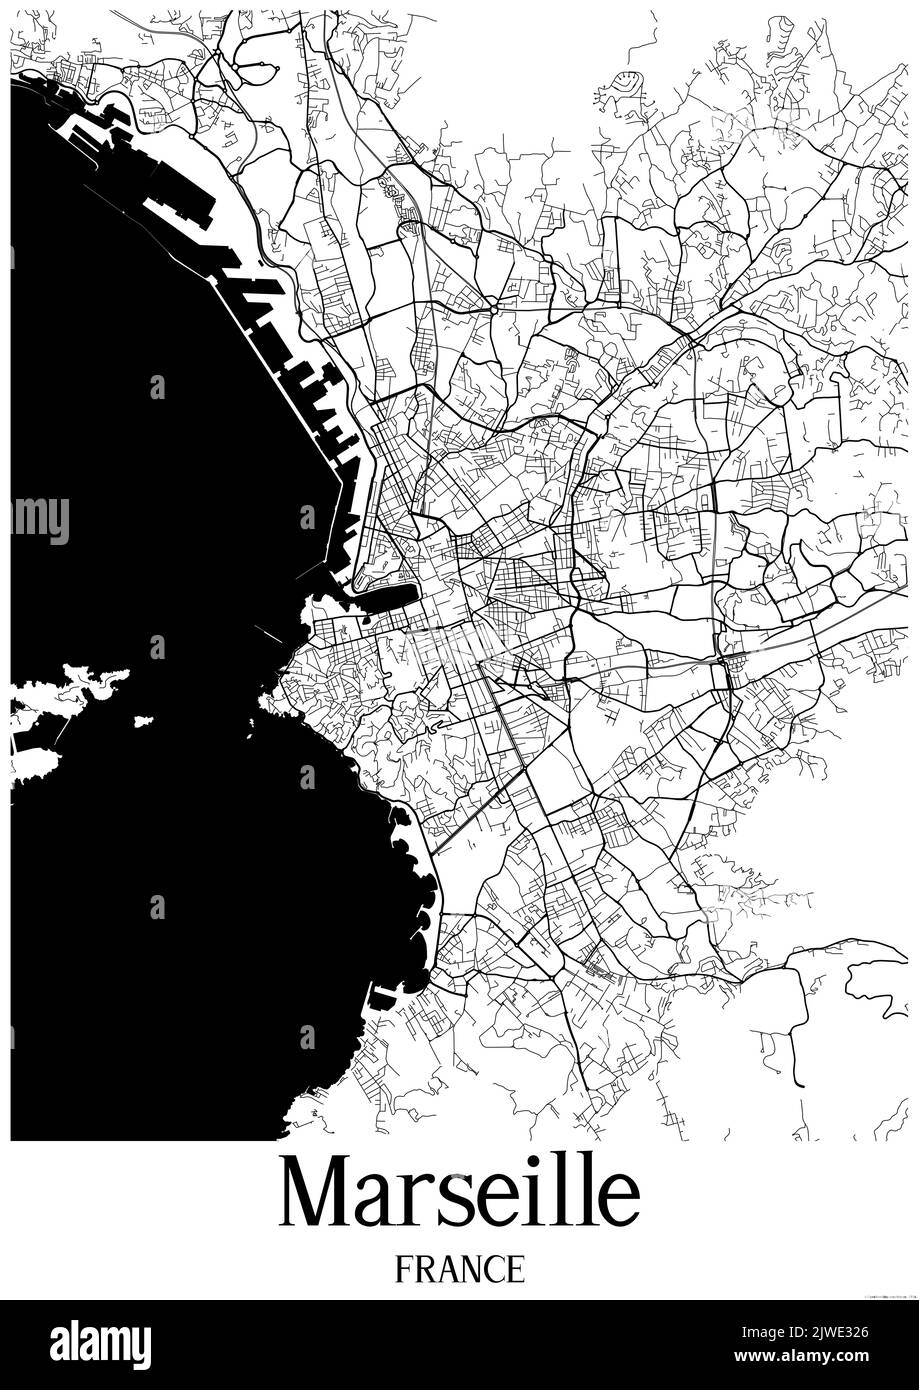 Klassische Schwarz-Weiß-Stadtkarte von Marseille Frankreich.Diese Karte enthält geografische Linien für Haupt- und Nebenstraßen. Stockfoto